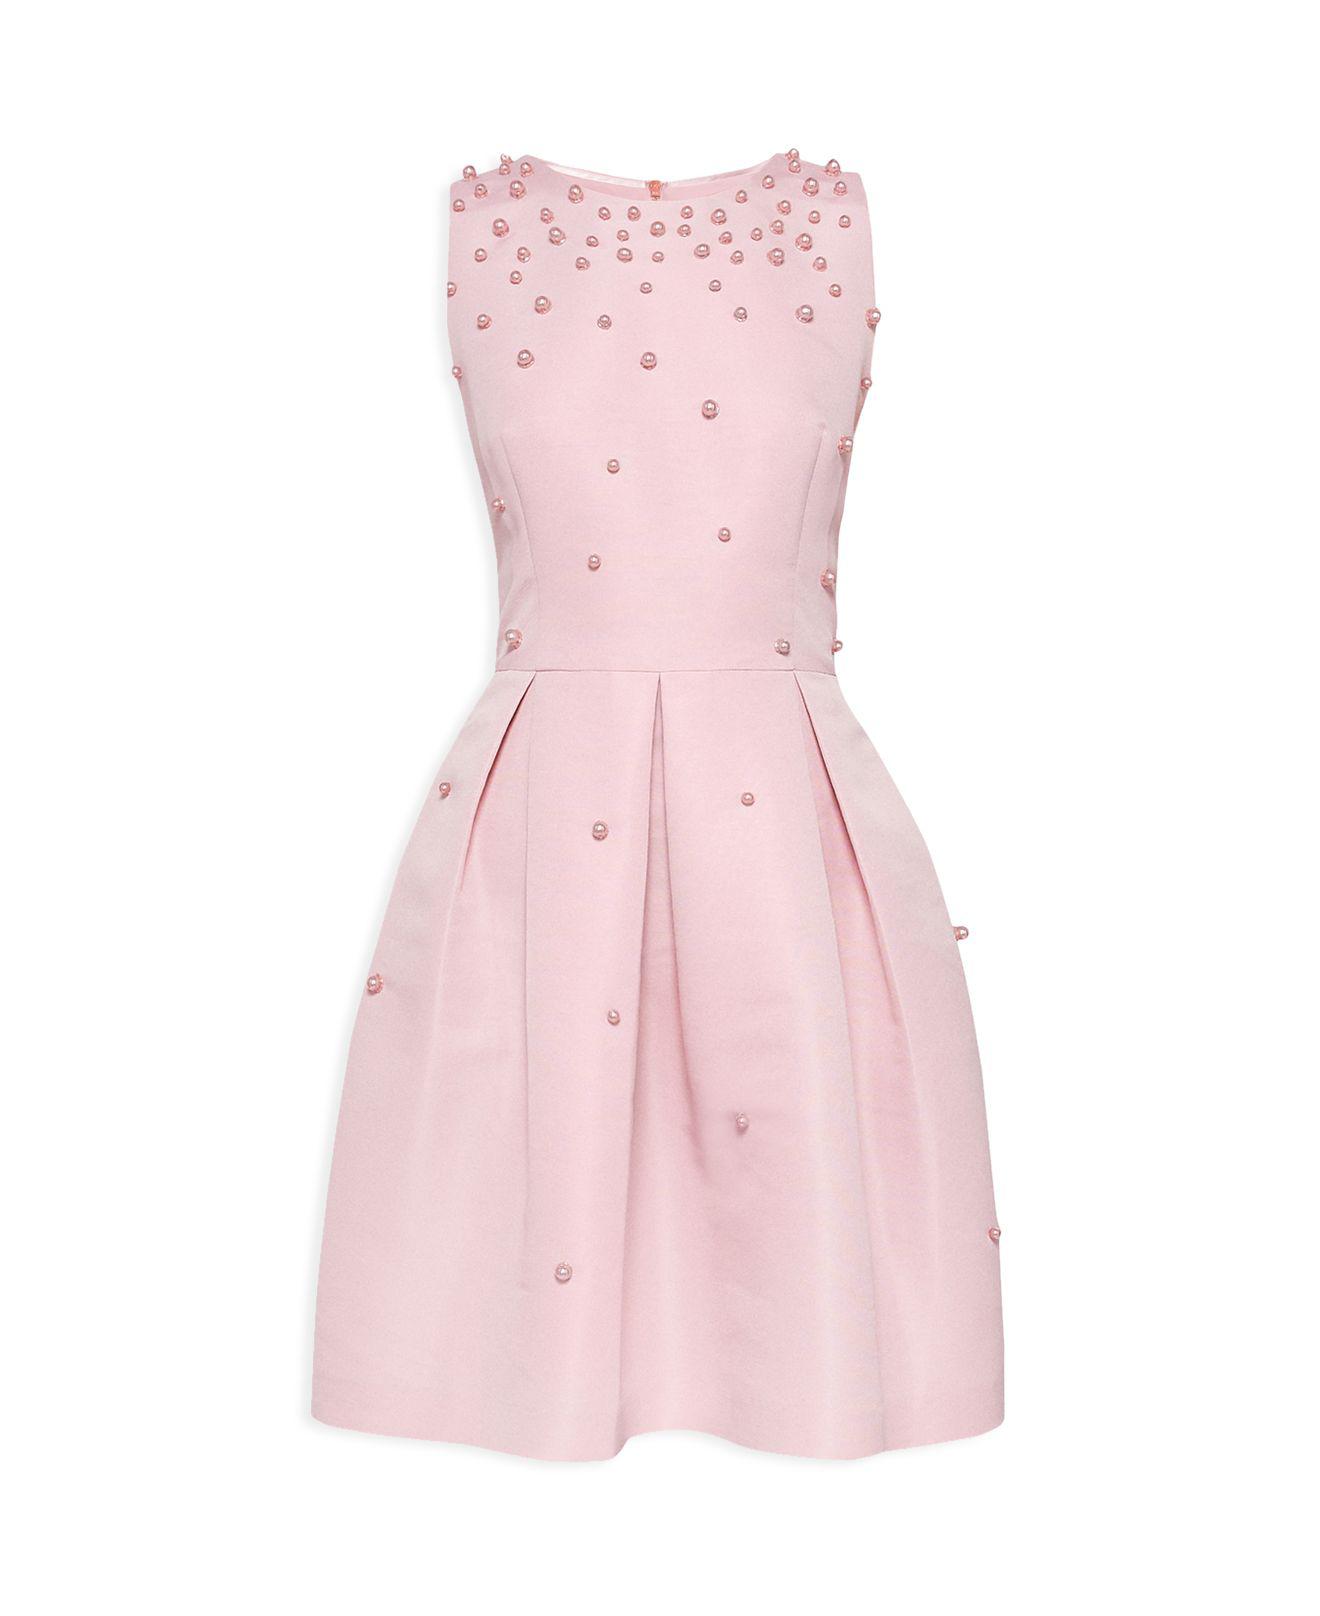 Ted Baker Milliea Embellished Skater Dress in Pink - Lyst